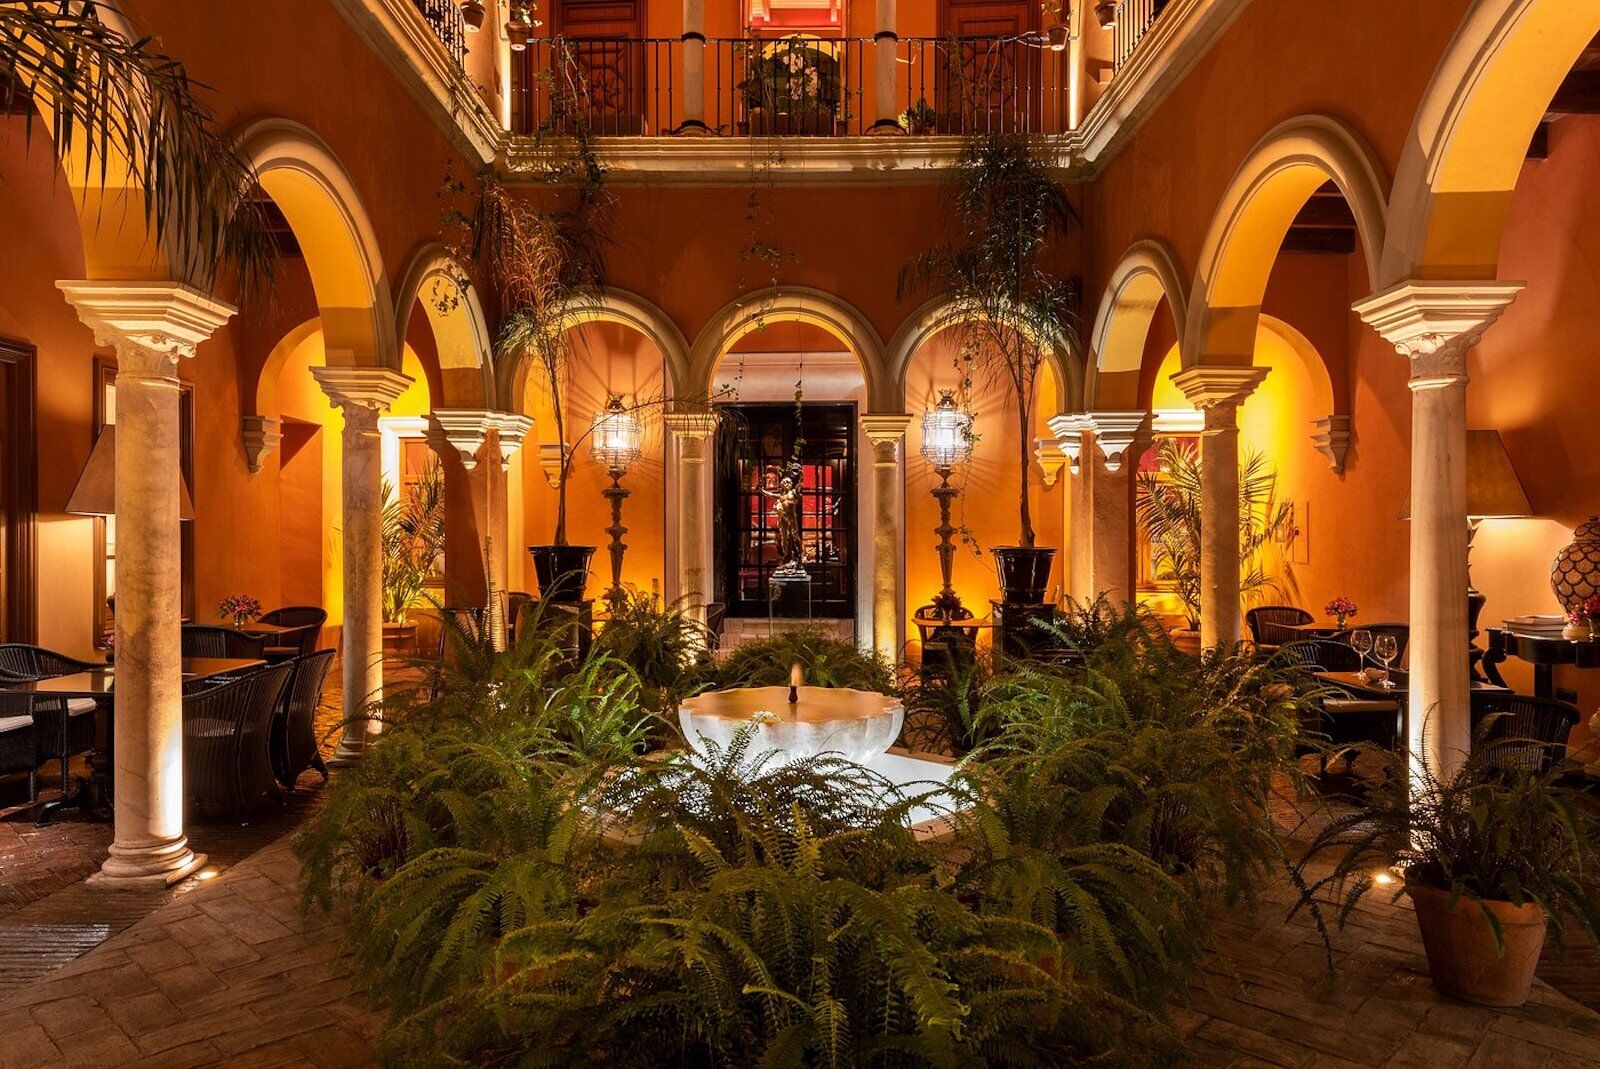 Hotel Casa del Poeta in Seville Spain